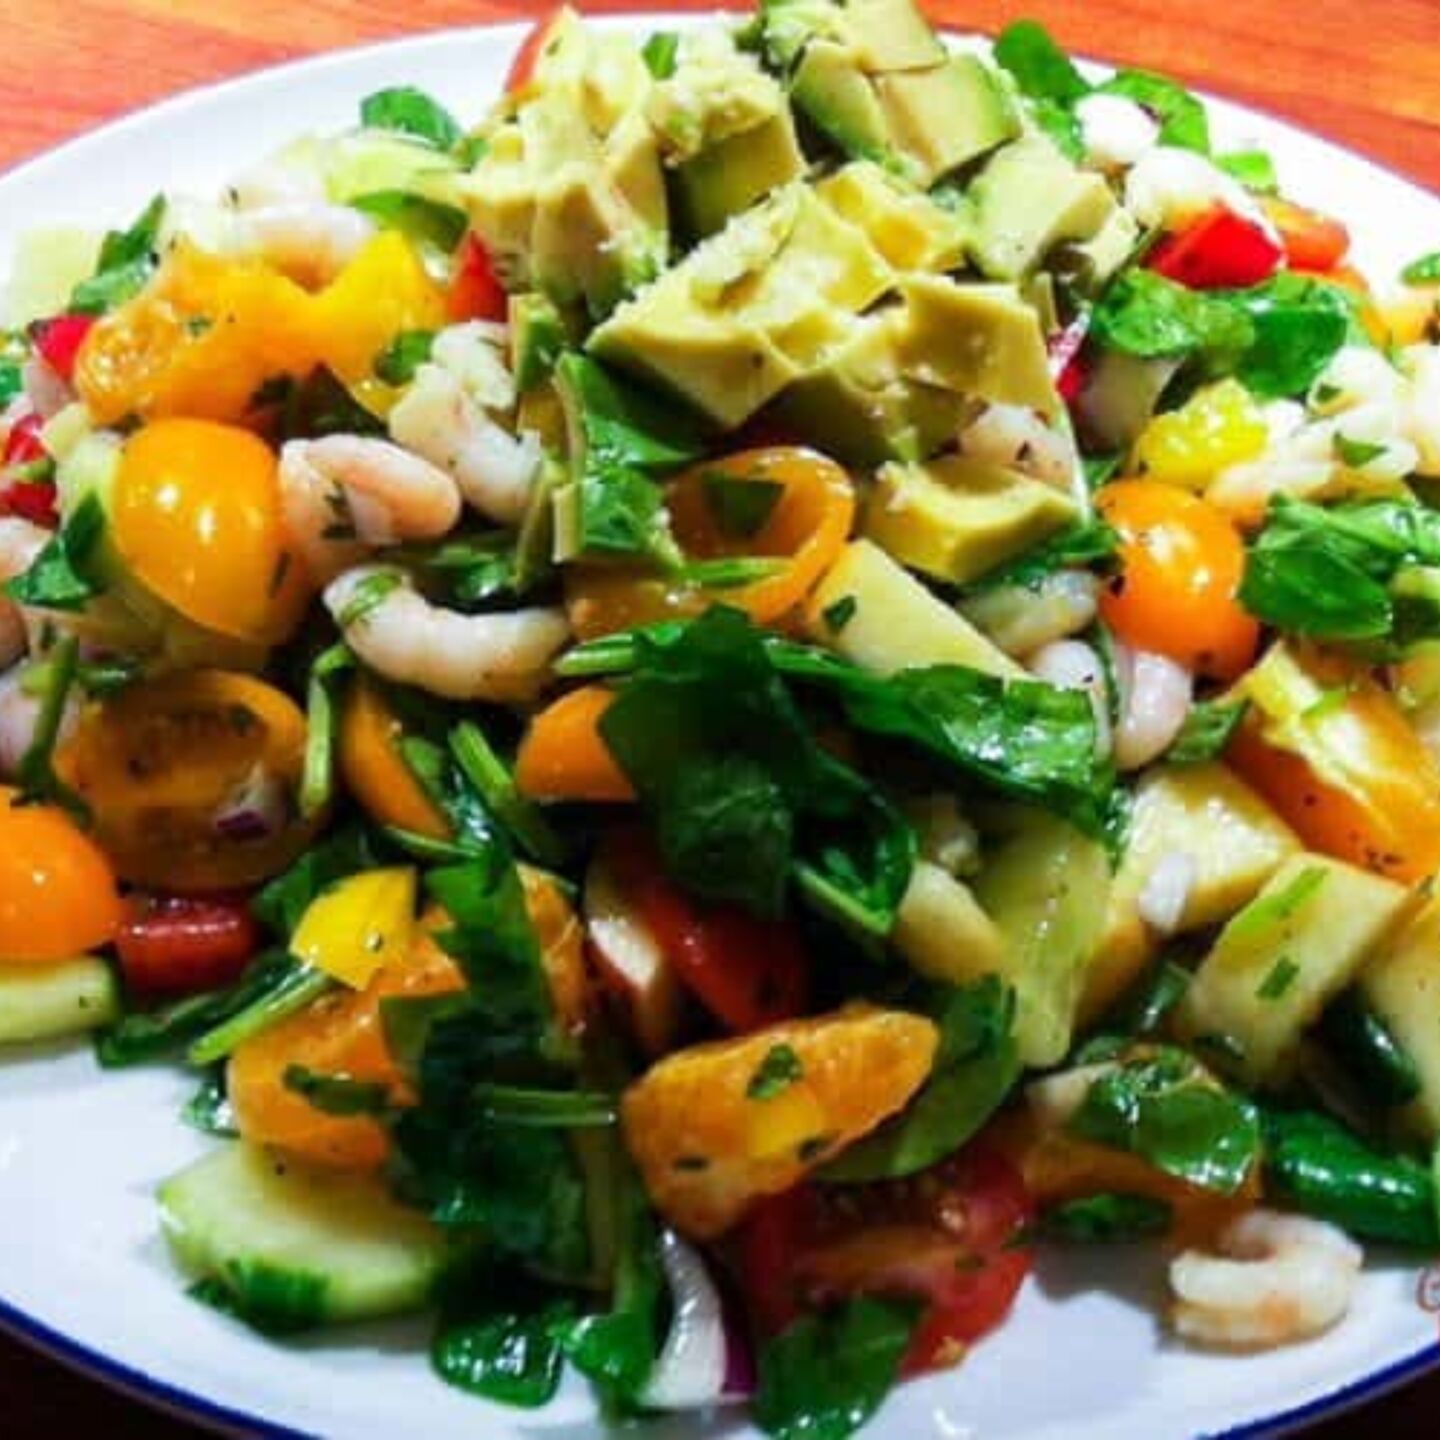 16. Shrimp cilantro orange spinach salad